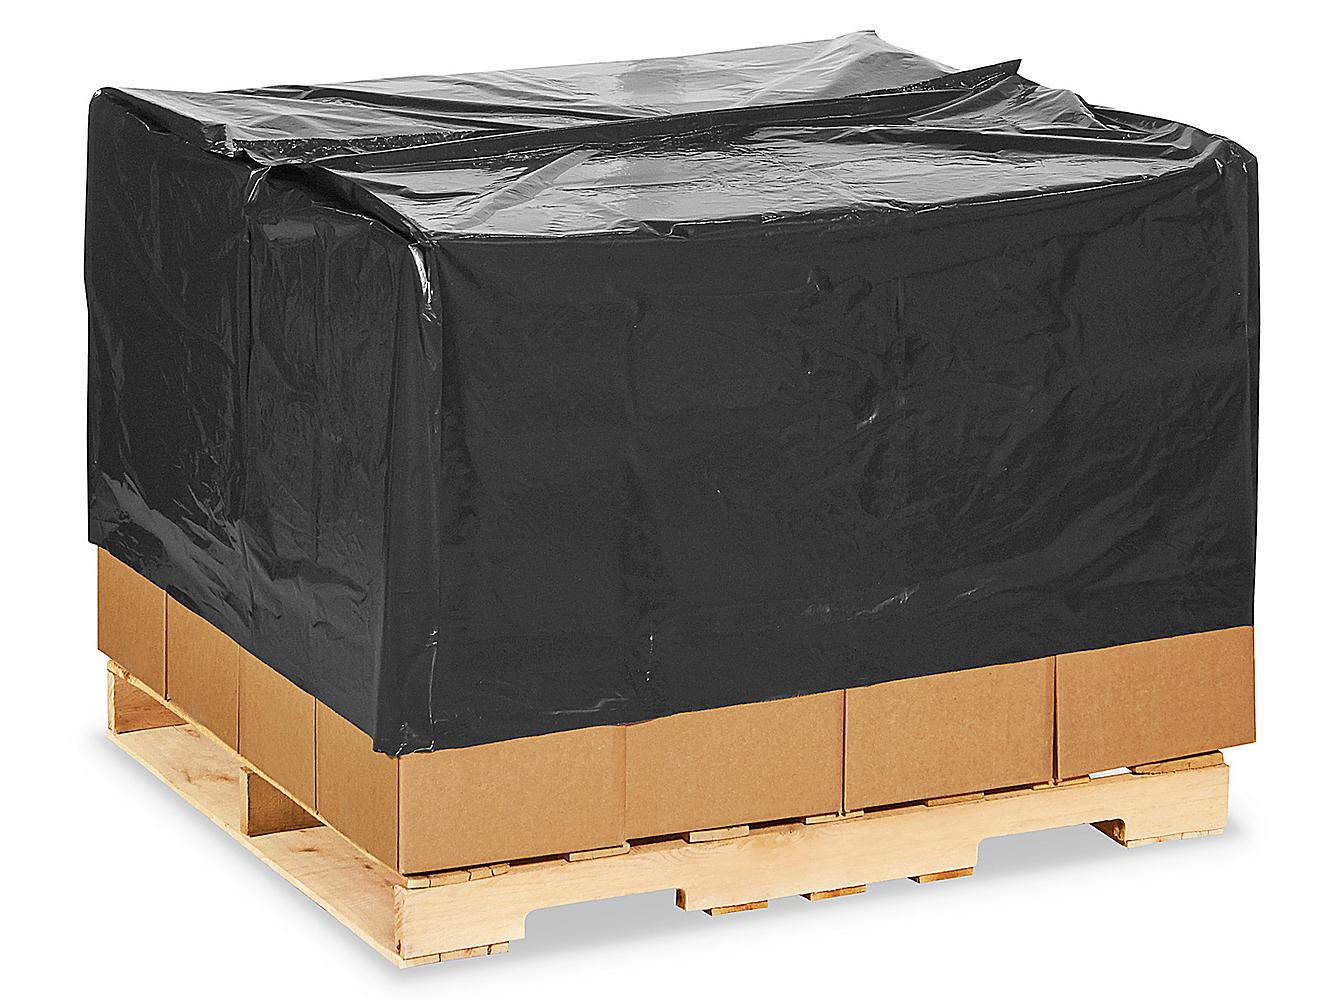 Black Plastic Pallet Covers 50/Case 2 Mil 48 x 42 x 48 